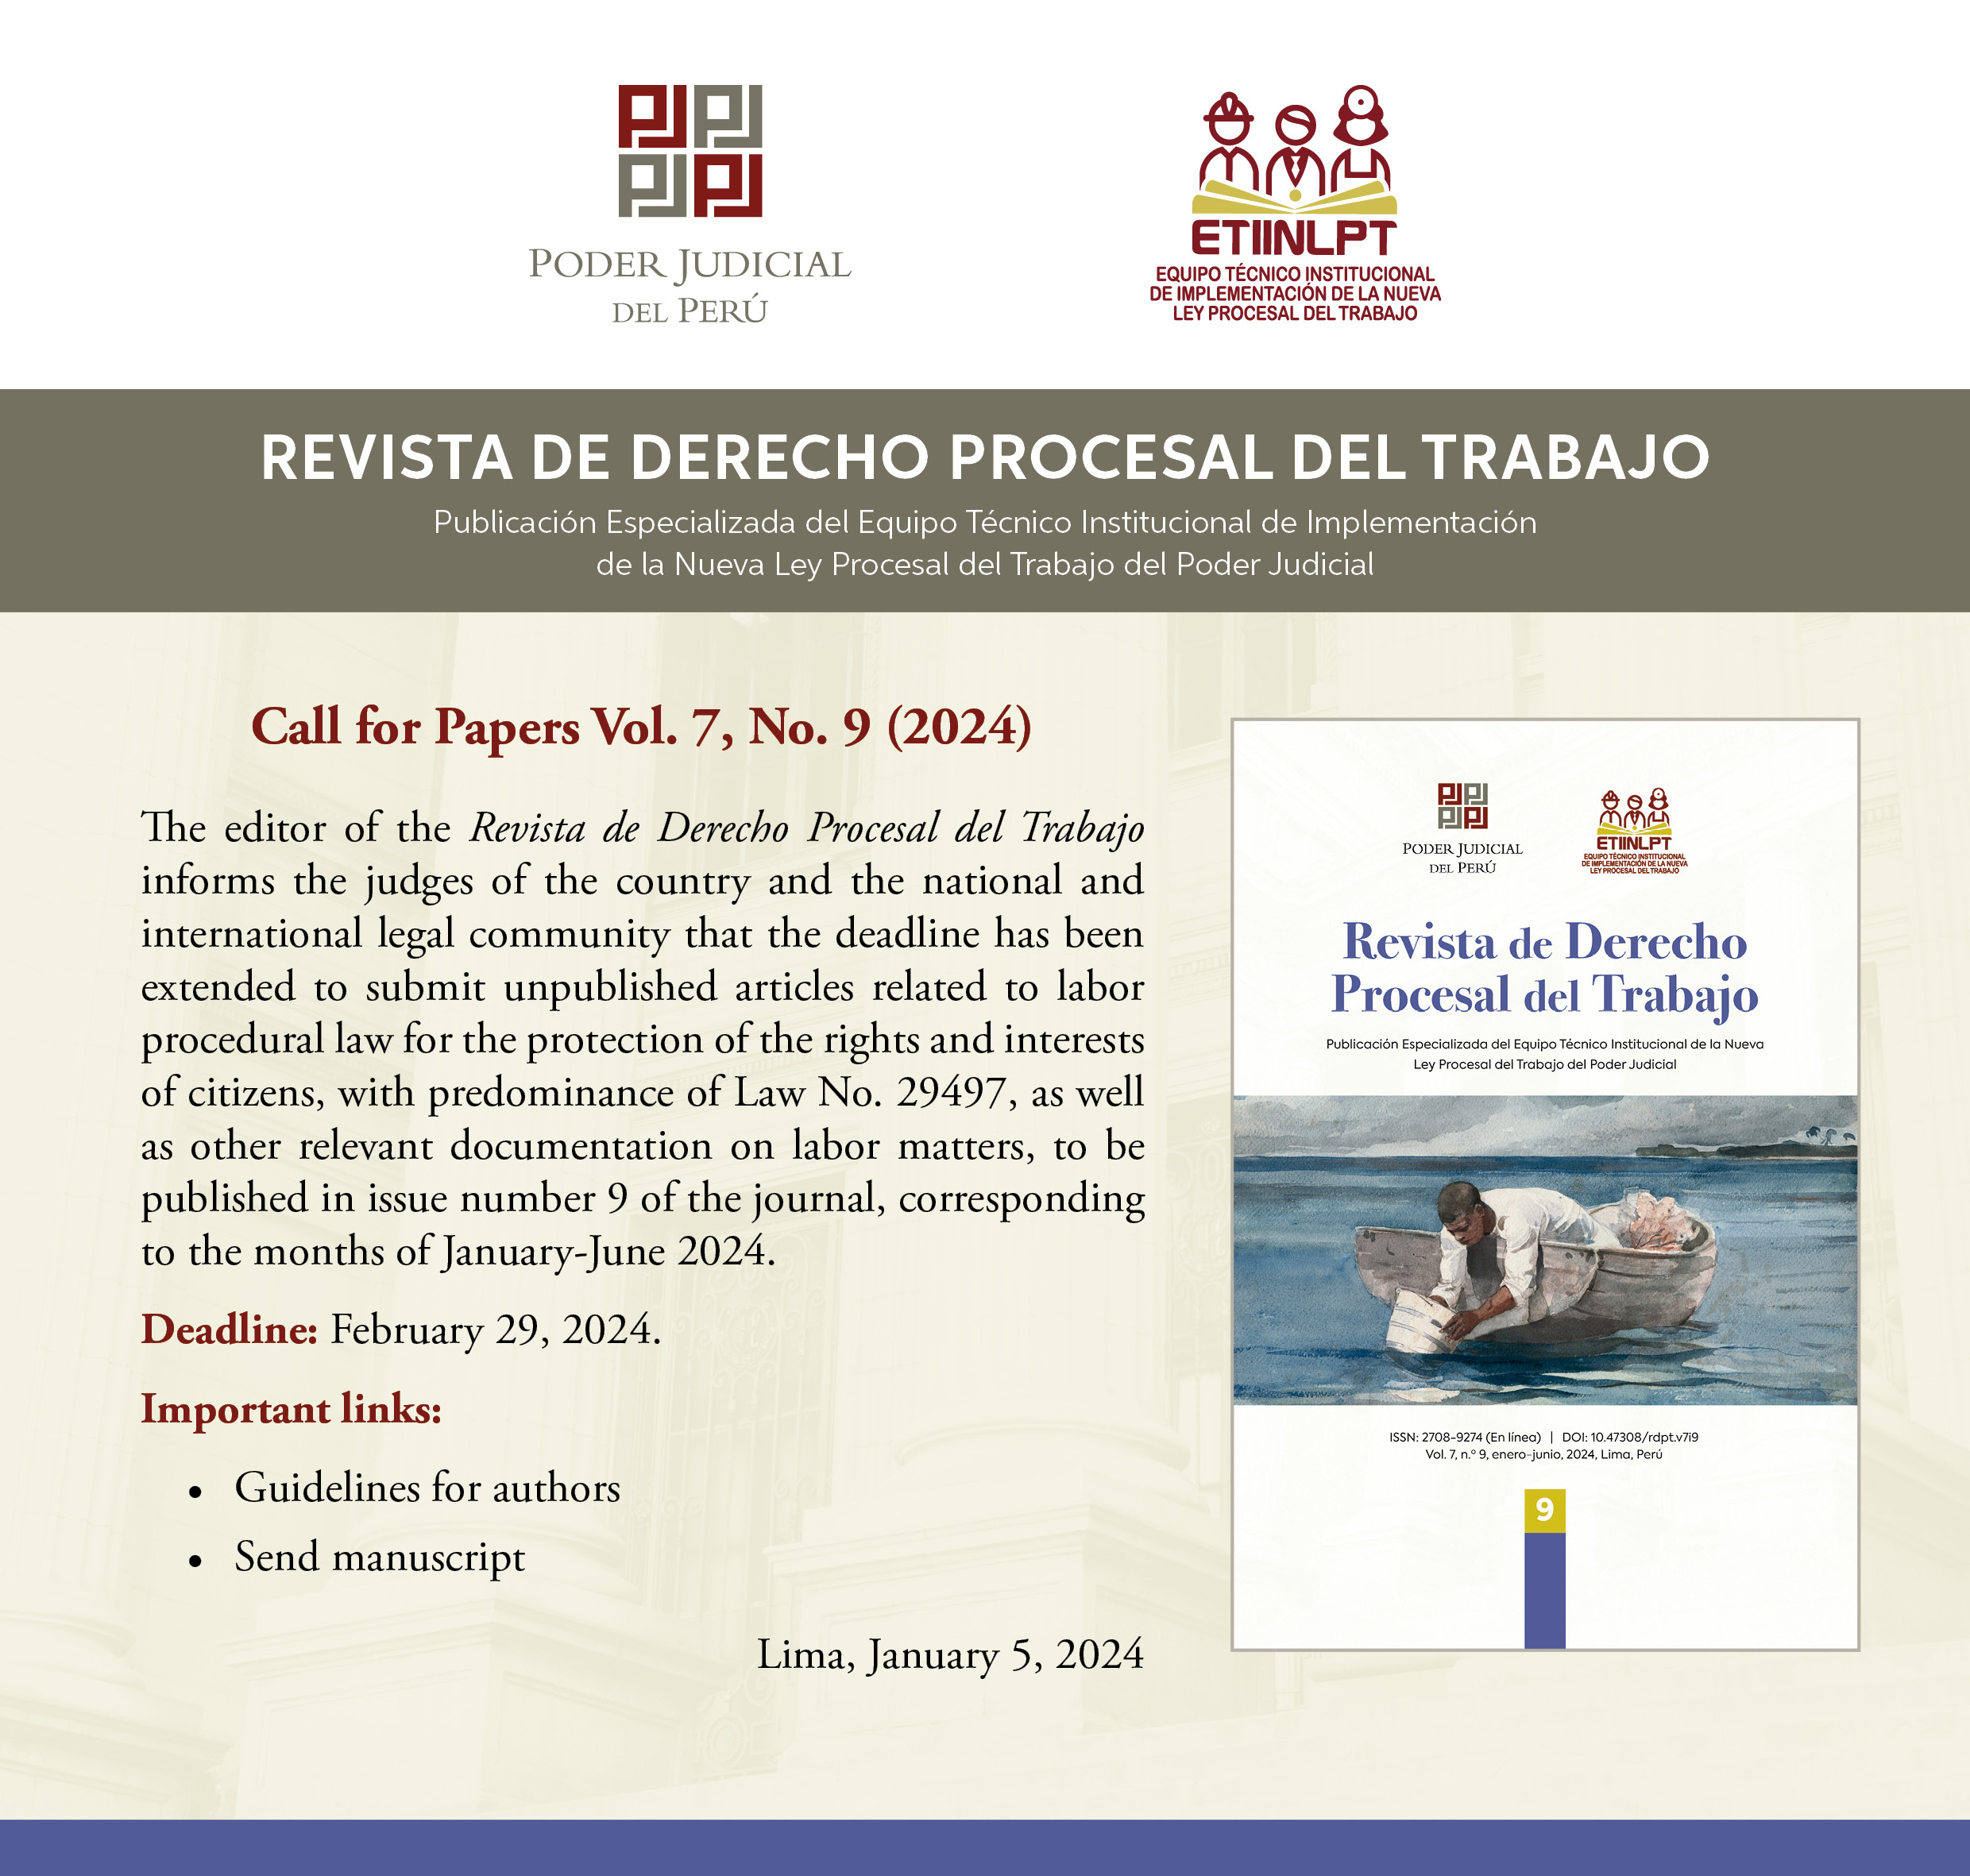 versión_ingles_Revista_de_derecho_procesal_del_trabajo1.jpg